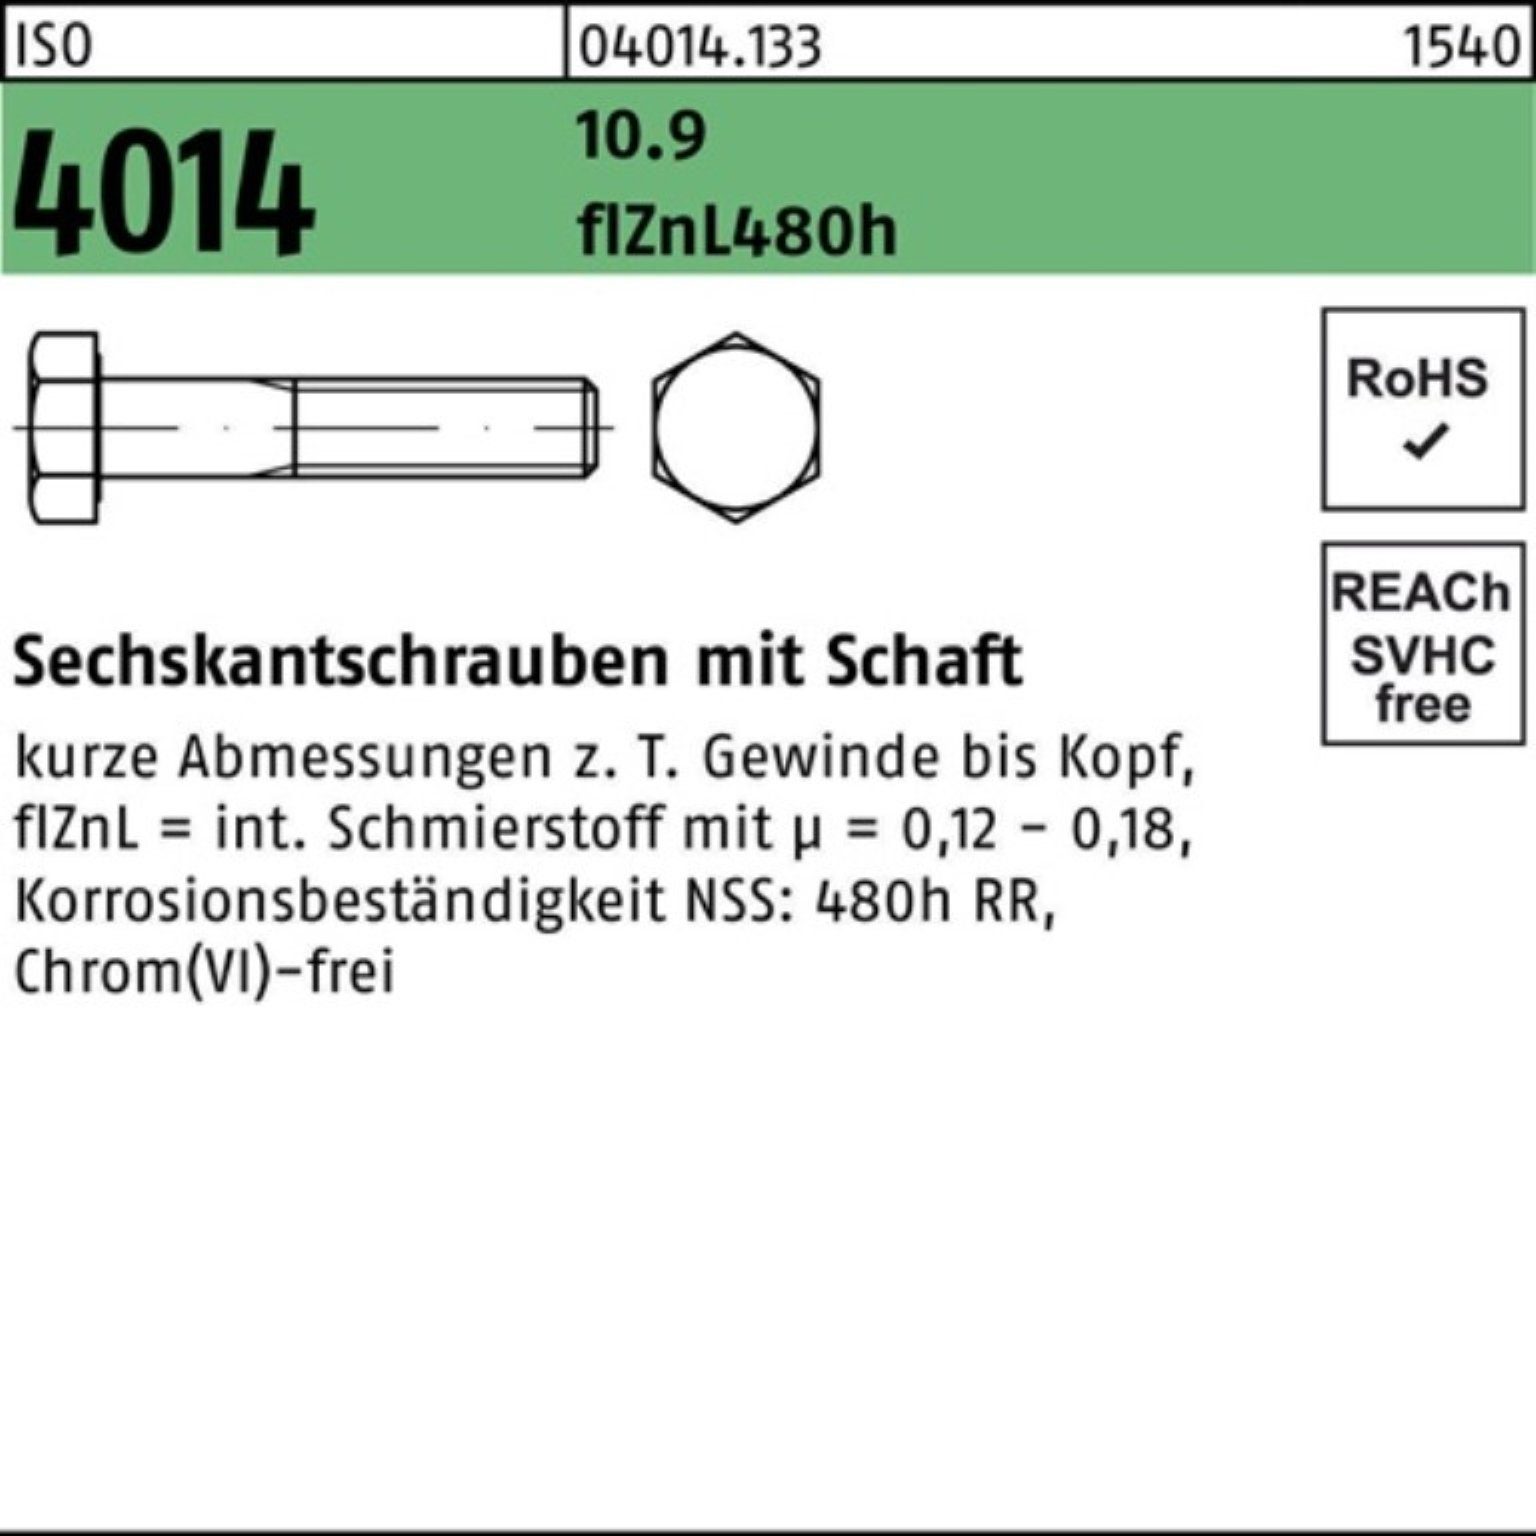 Bufab Sechskantschraube 100er Pack Sechskantschraube zinklamellen M10x 10.9 Schaft 4014 80 ISO